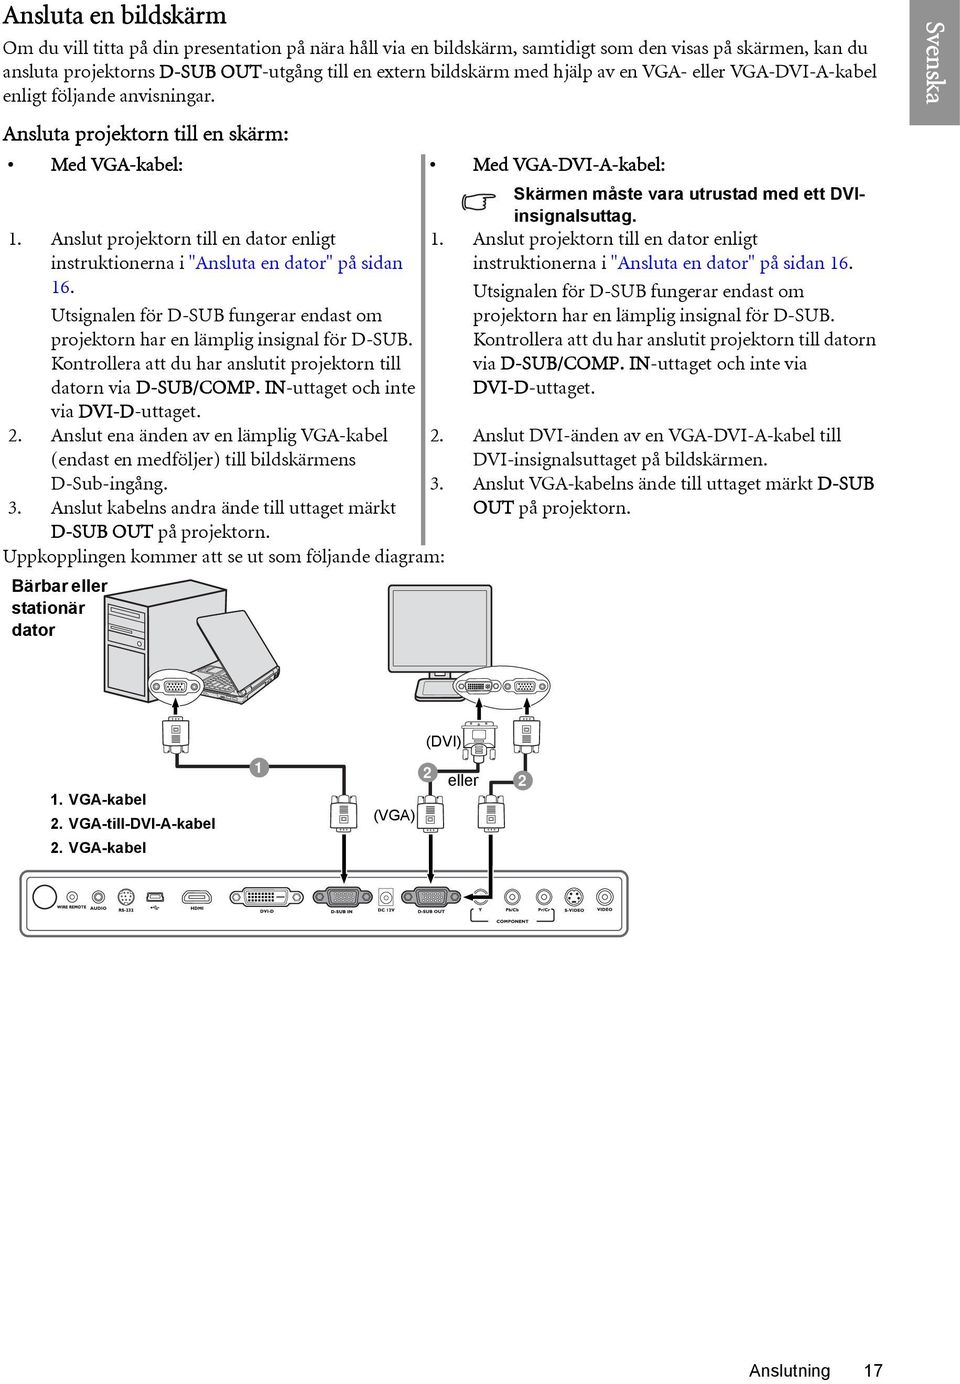 Anslut projektorn till en dator enligt instruktionerna i "Ansluta en dator" på sidan 16. Utsignalen för D-SUB fungerar endast om projektorn har en lämplig insignal för D-SUB.